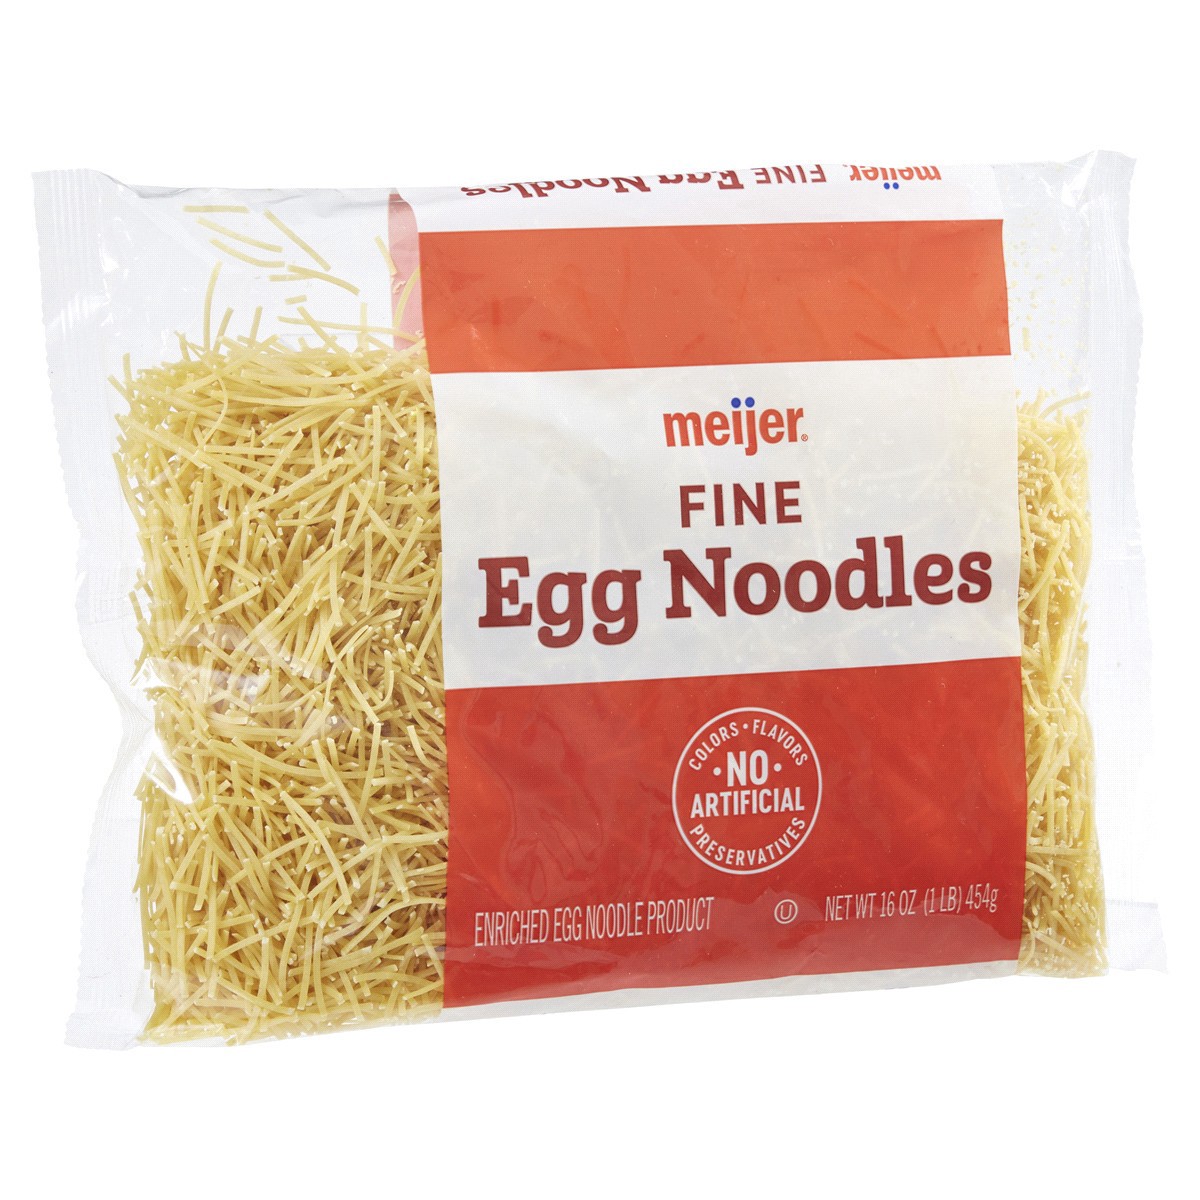 slide 5 of 29, Meijer Fine Egg Noodles, 16 oz